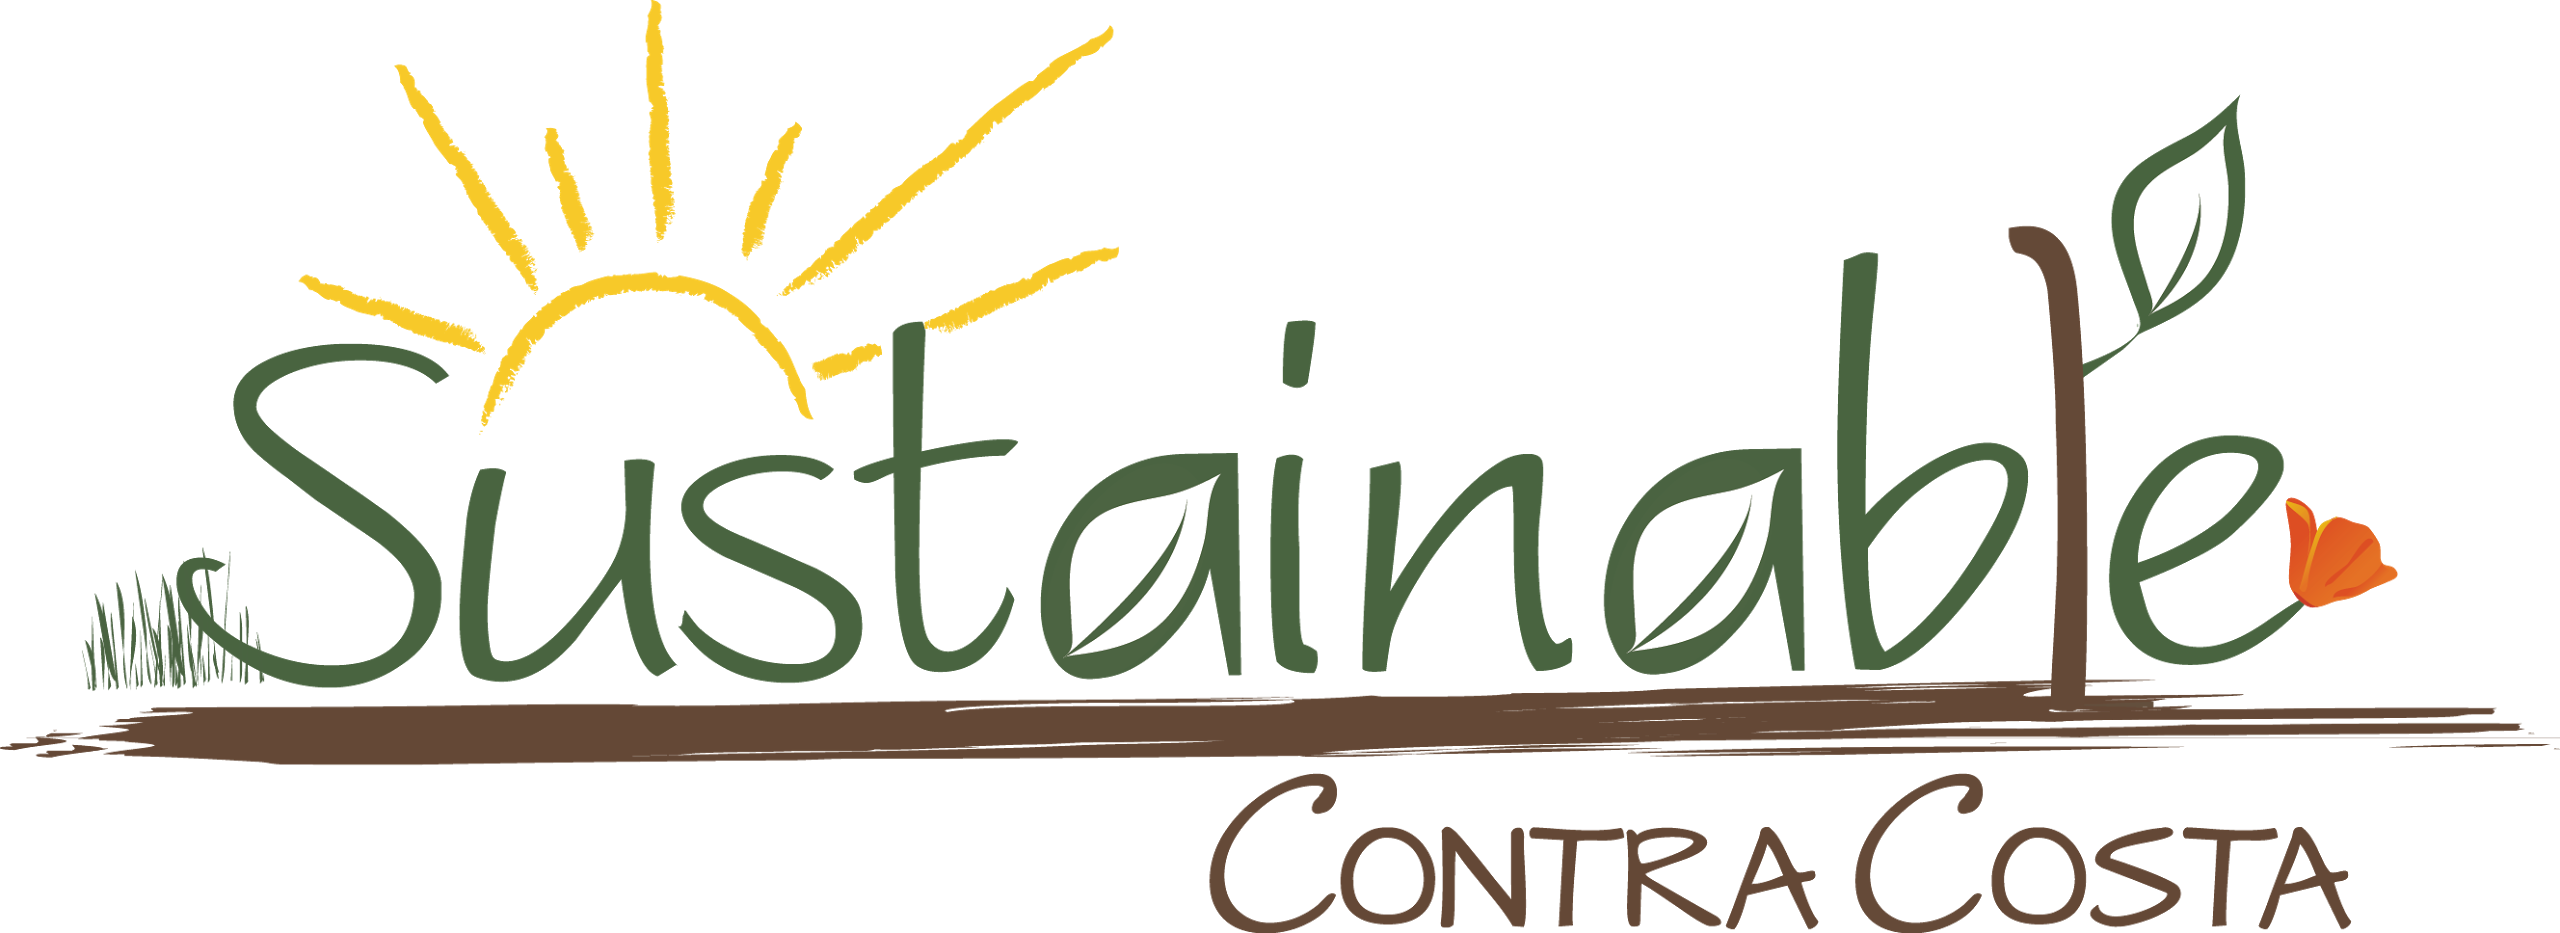 логотип, говорит Устойчивая Контра Коста, показывает иллюстрацию садовой почвы, растения, цветка, солнечного света